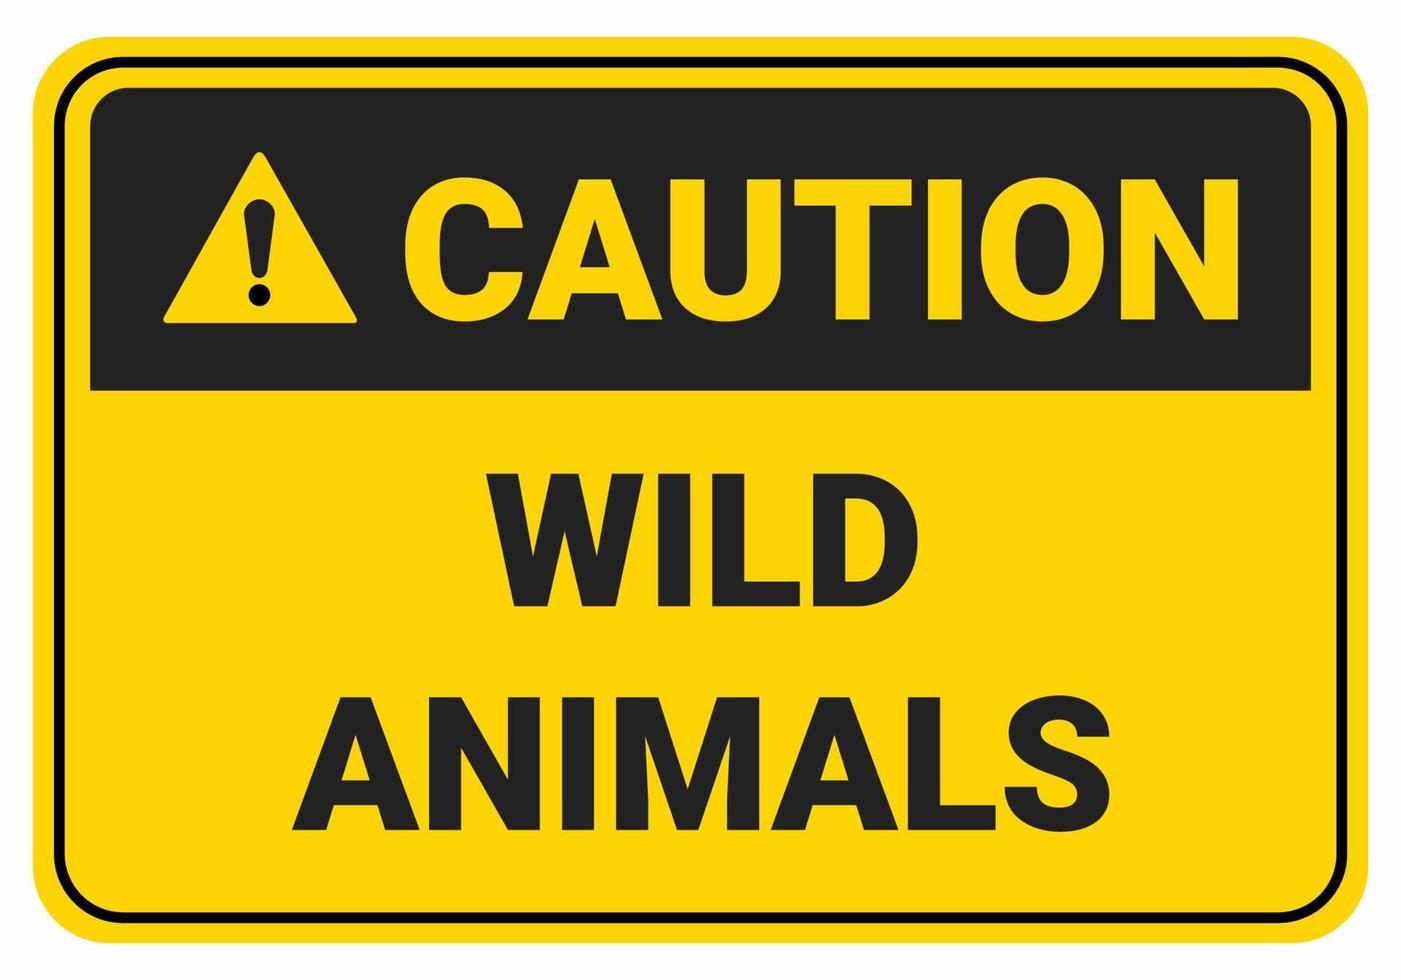 attenzione agli animali selvatici. illustrazione del simbolo del segnale di sicurezza. standard osha e ansi. vettore